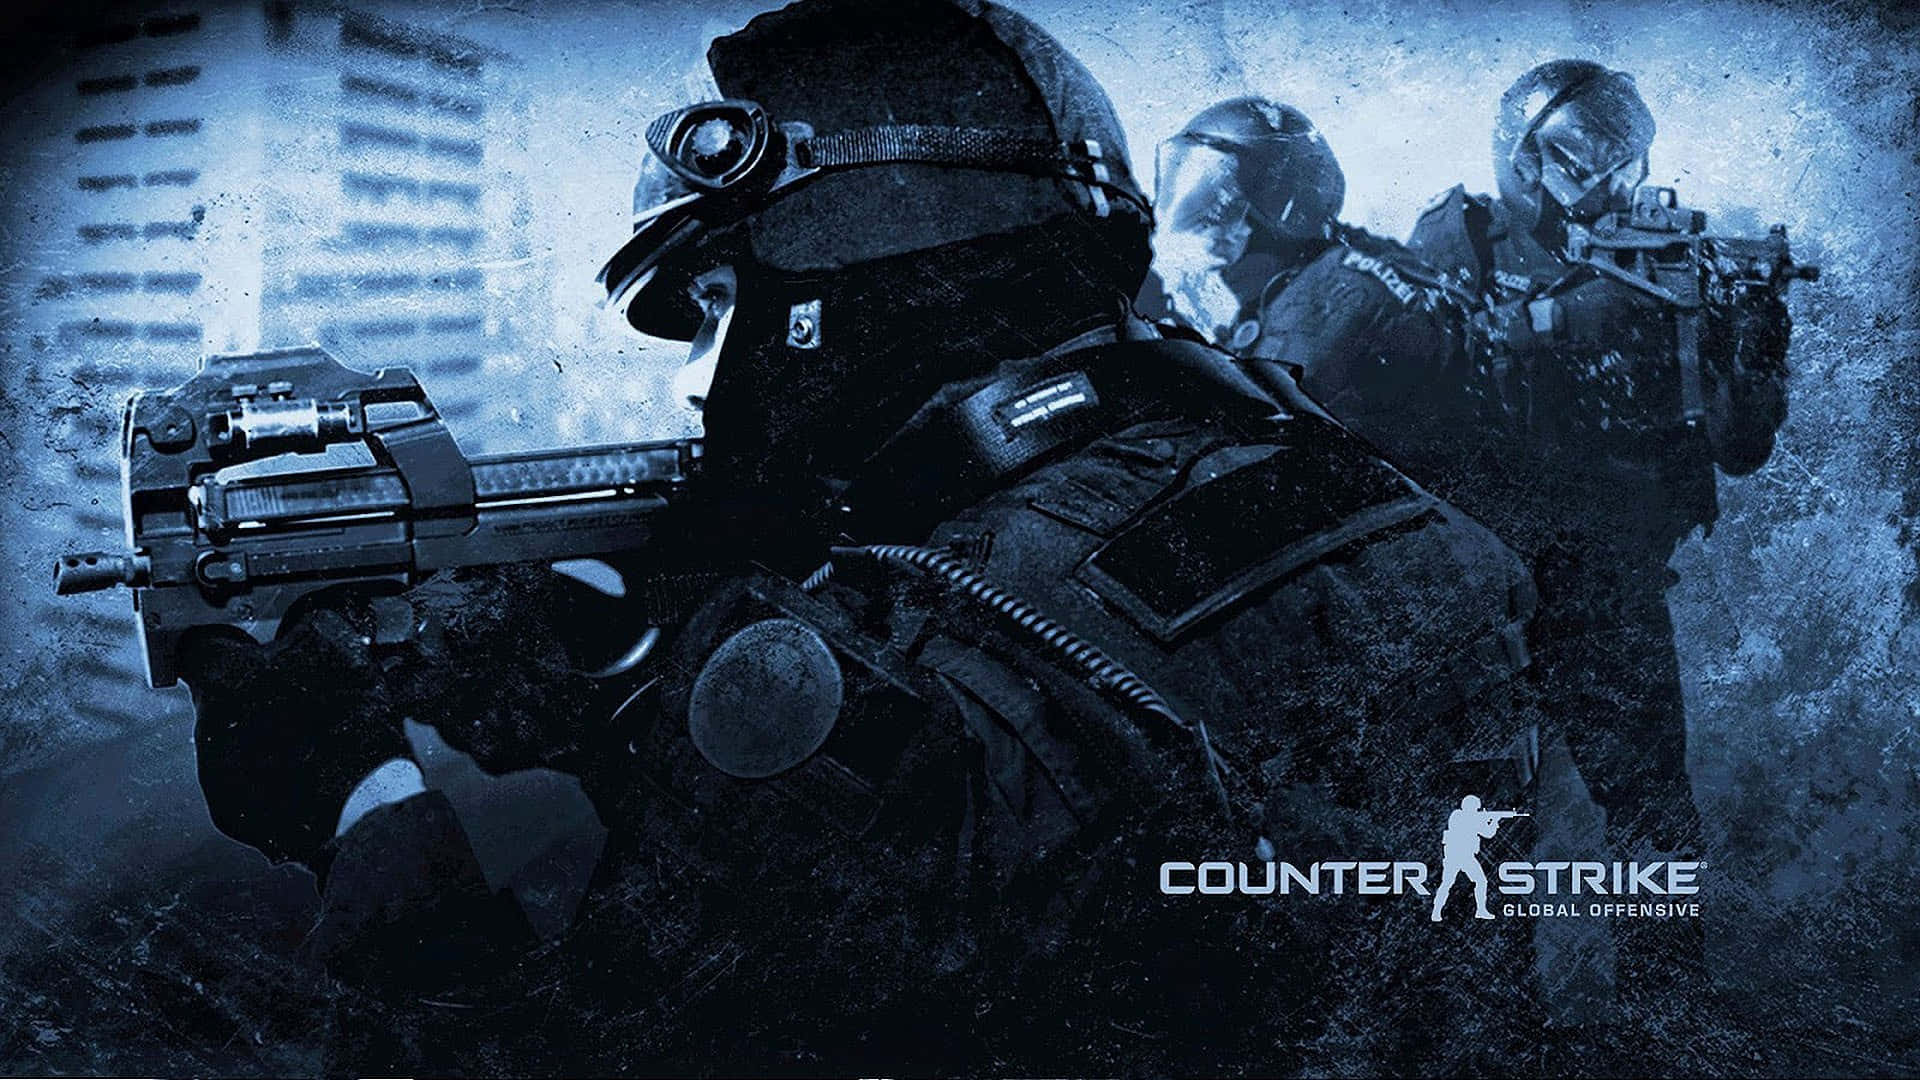 Preparatiper Una Lotta Intensa In Counter Strike: Global Offensive.